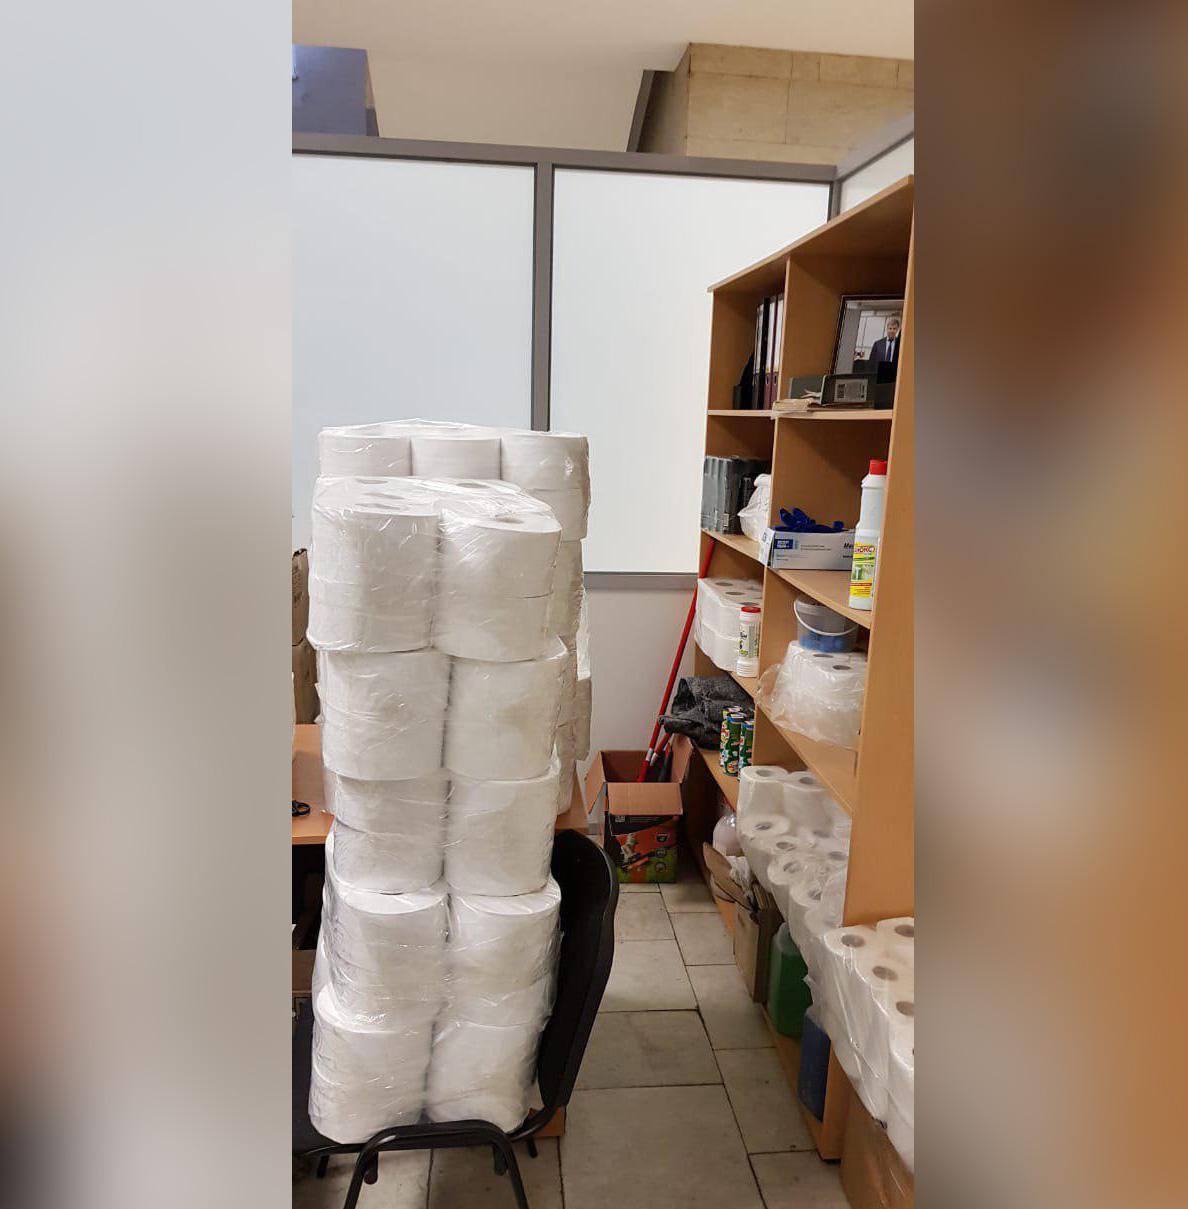 Рулоны туалетной бумаги в антикоррупционной приёмной. Фото предоставлено источником Лайфа